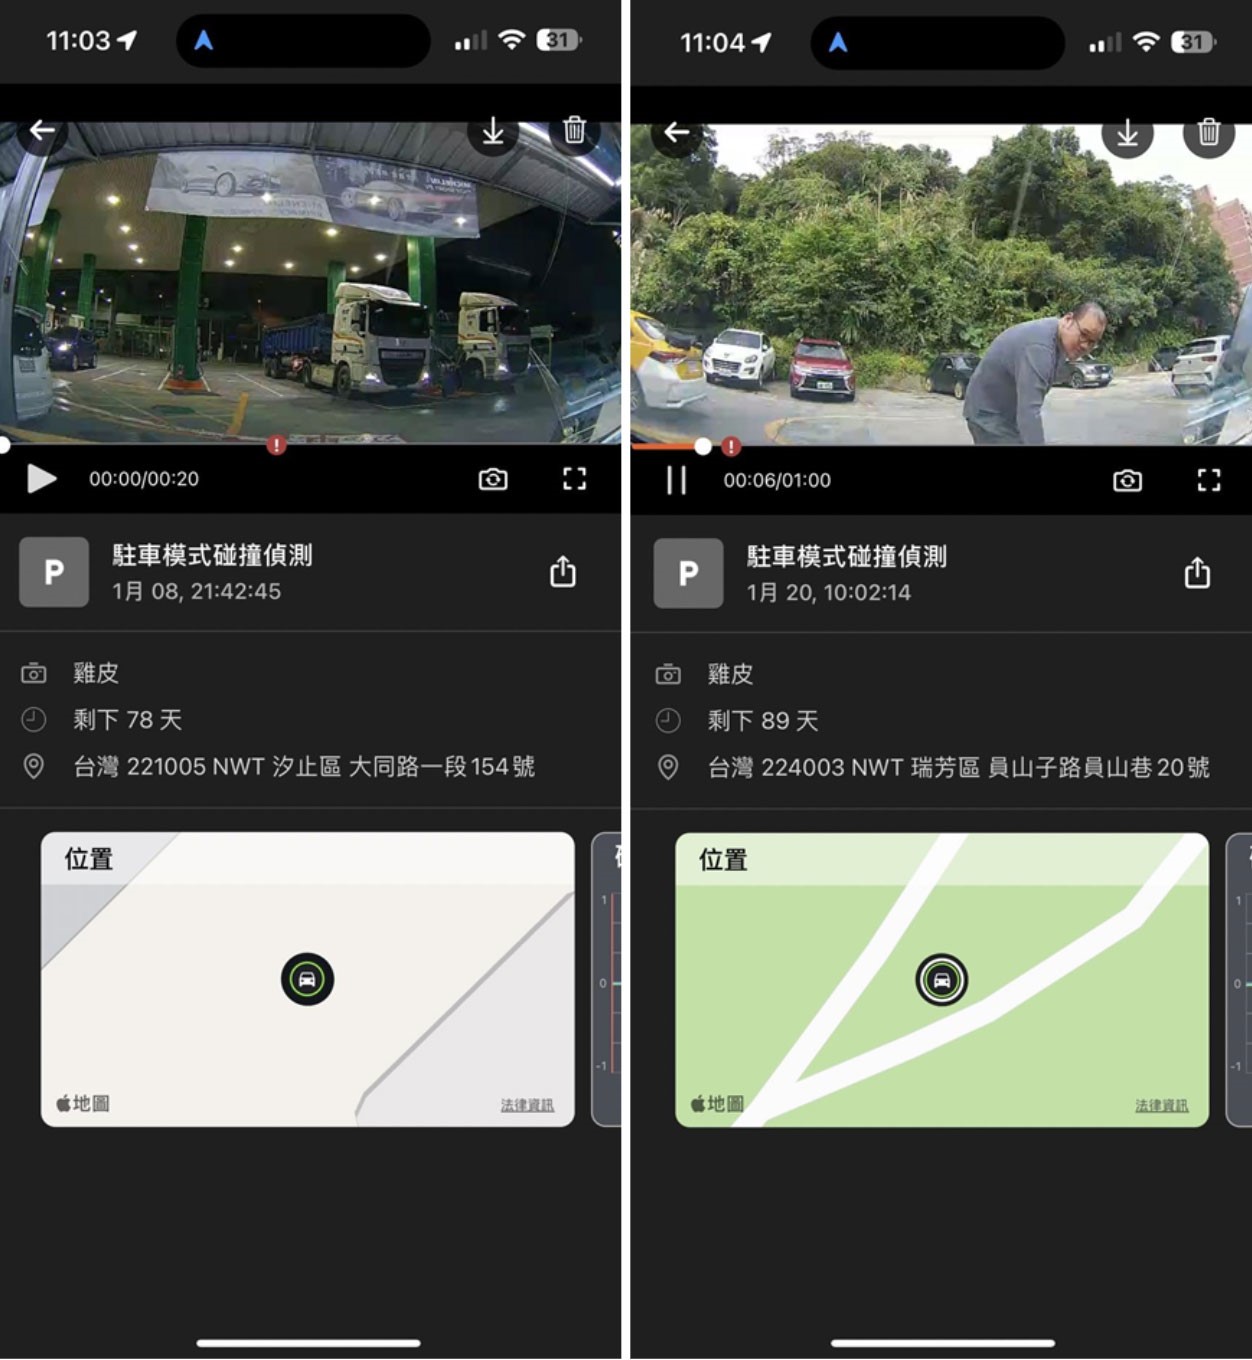 在事件通知方面，MioNext App 提供手機 App 推播事件即時通報功能，當行車記錄器偵測到碰撞、入侵等緊急事件時，立即通知使用者。這讓車主能夠即刻知曉車輛的安全狀態，有助於快速應對突發狀況。（圖片來源：網友姜浩）